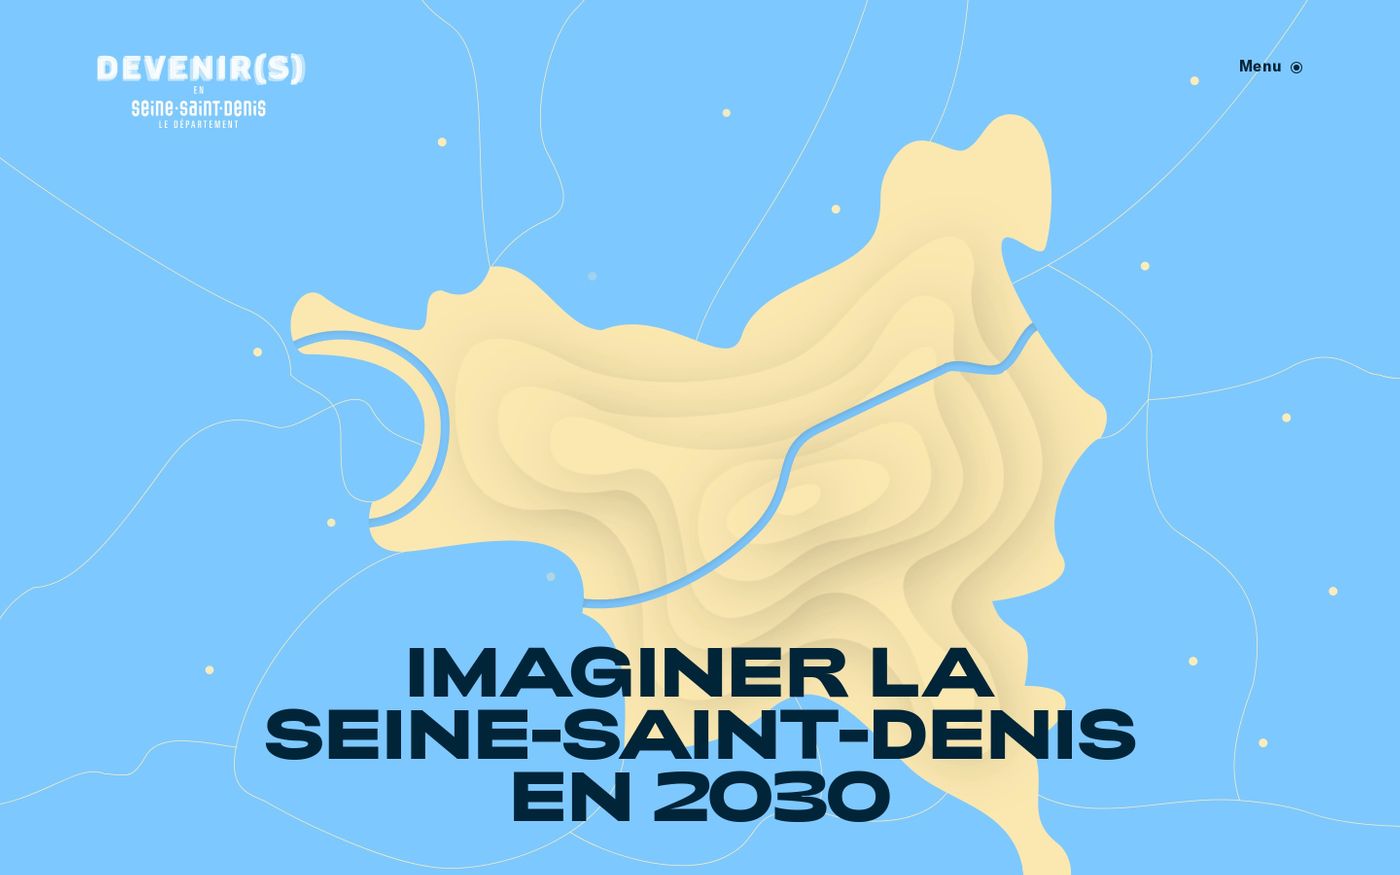 Screenshot of Imaginer la Seine-Saint-Denis en 2030 - Devenir(s) website